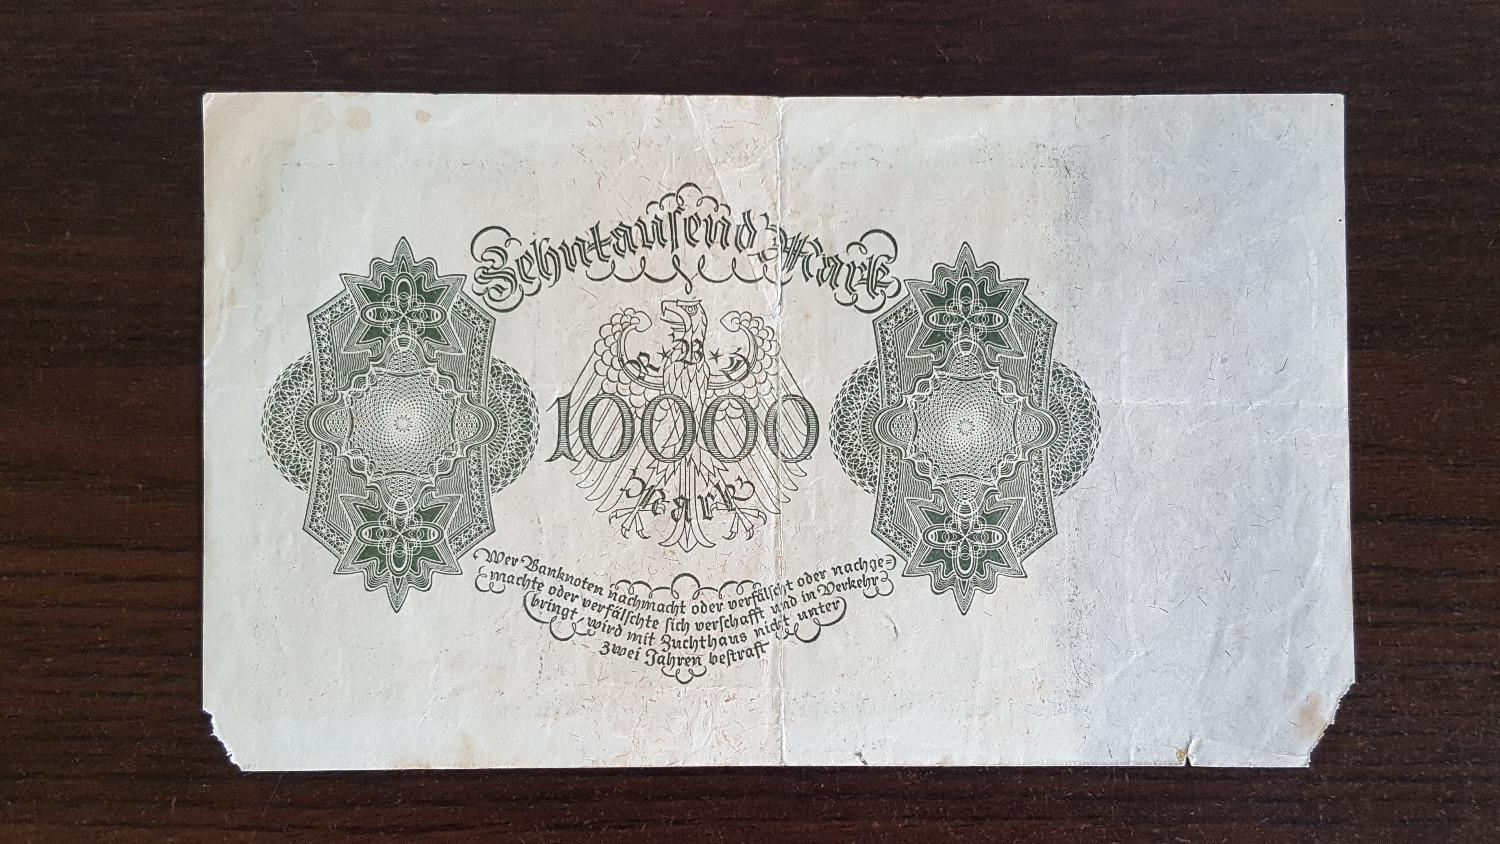 10 000 Mark 1922